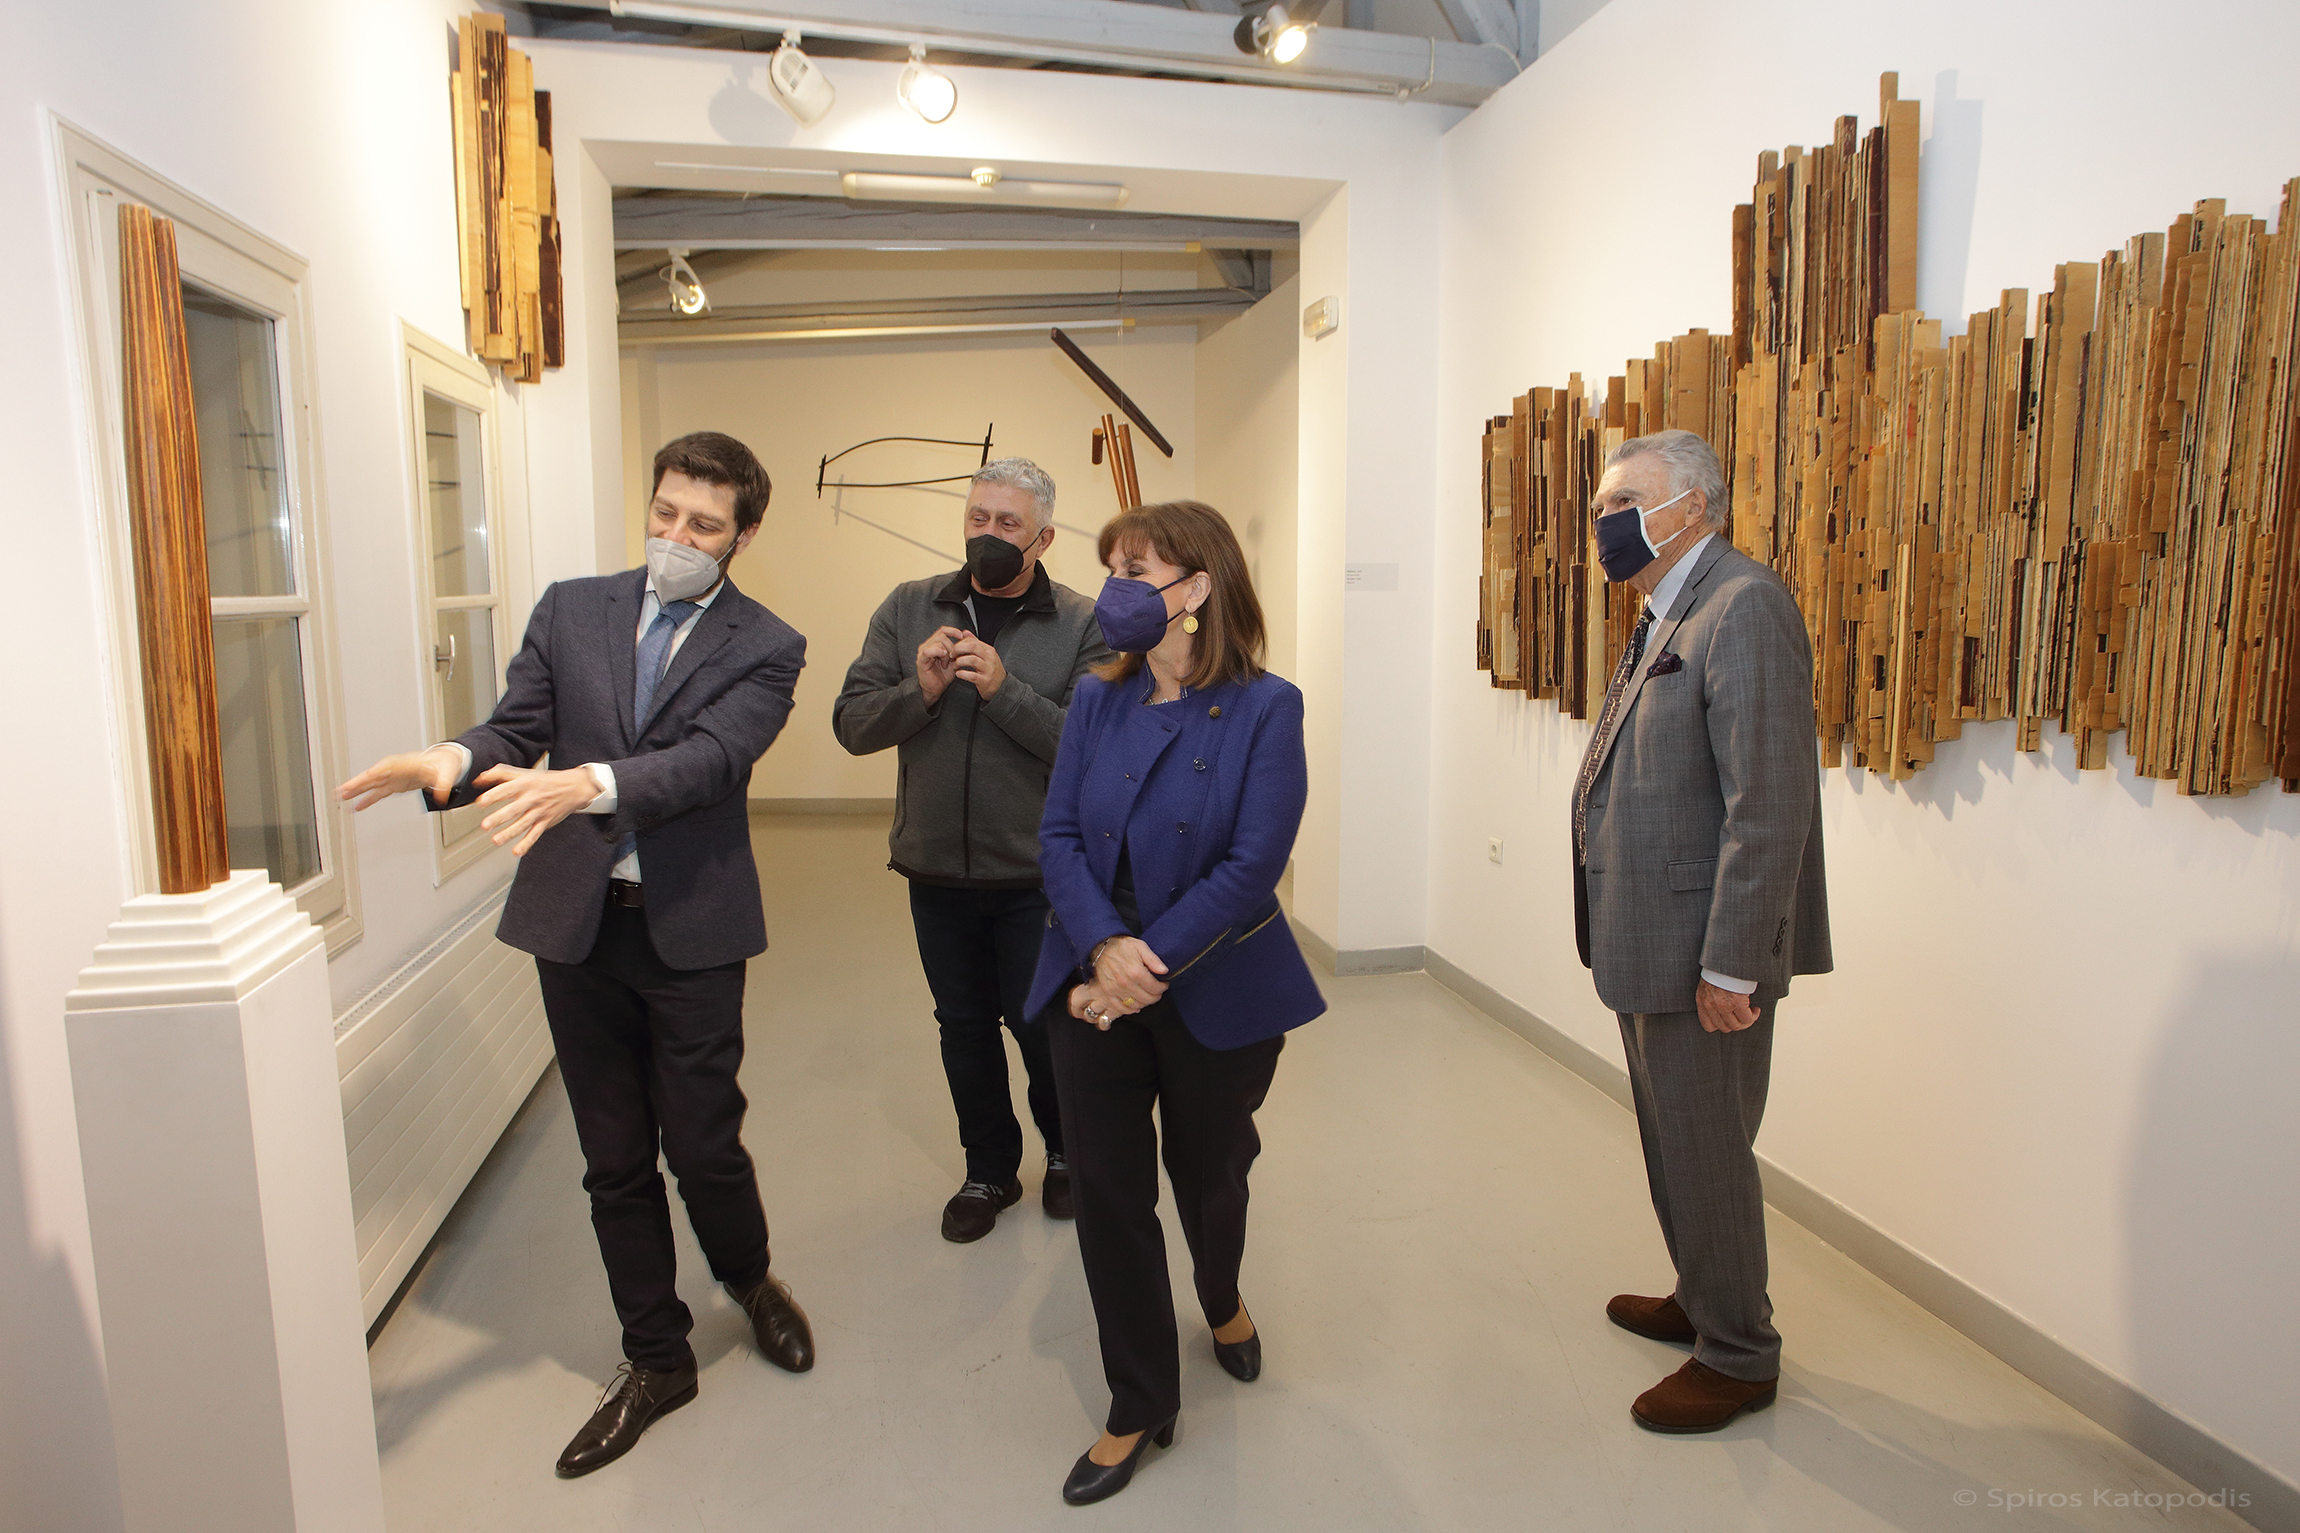 Στιγμιότυπα από την επίσκεψη της κ. Κατερίνας Σακελλαροπούλου, Προέδρου της Δημοκρατίας στο MOMus-Μουσείο Άλεξ Μυλωνά. Φωτ. Σπύρος Κατωπόδης